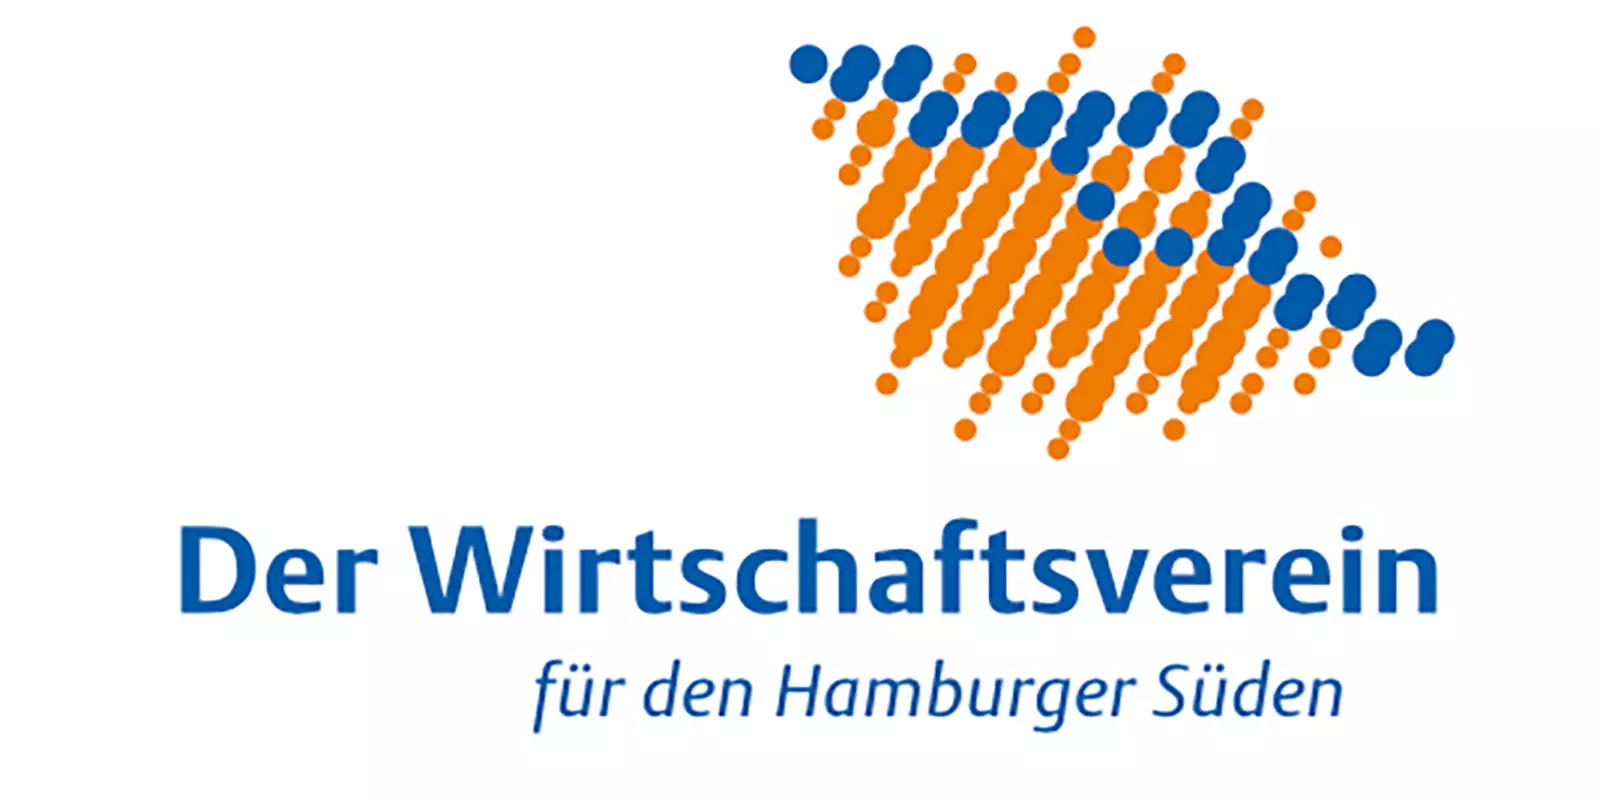 Der Wirtschaftsverein für den Hamburger Süden: 270 Mitgliedsunternehmen, 75 Jahre, 1 Verein